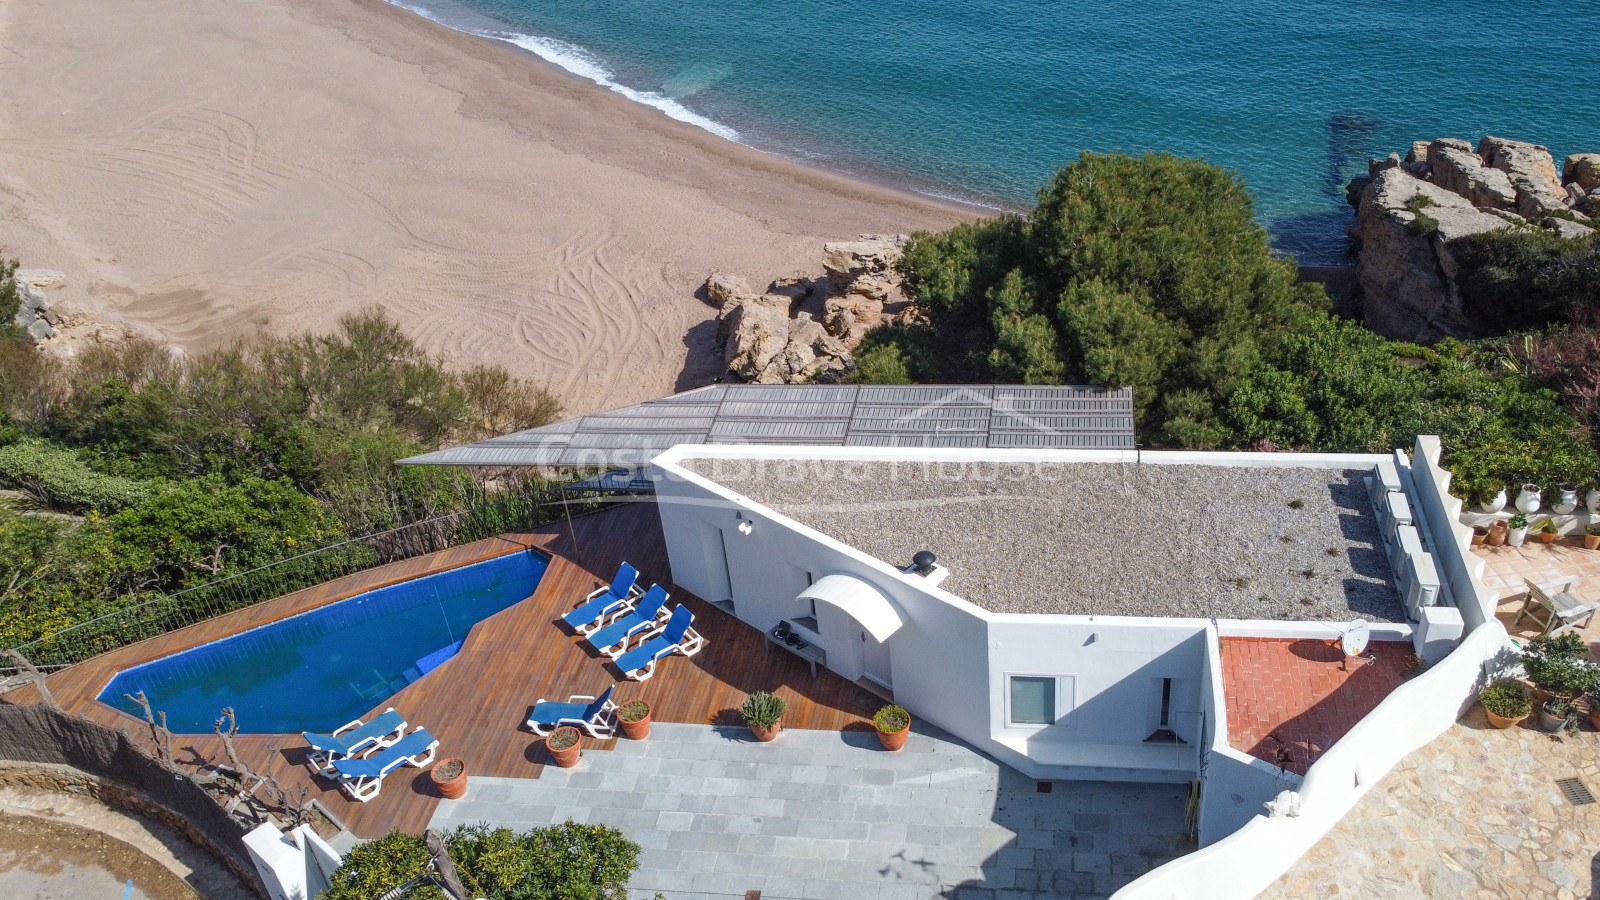 Exclusive villa de luxe à côté de la plage entre Begur et Pals, avec des vues incroyables sur la mer